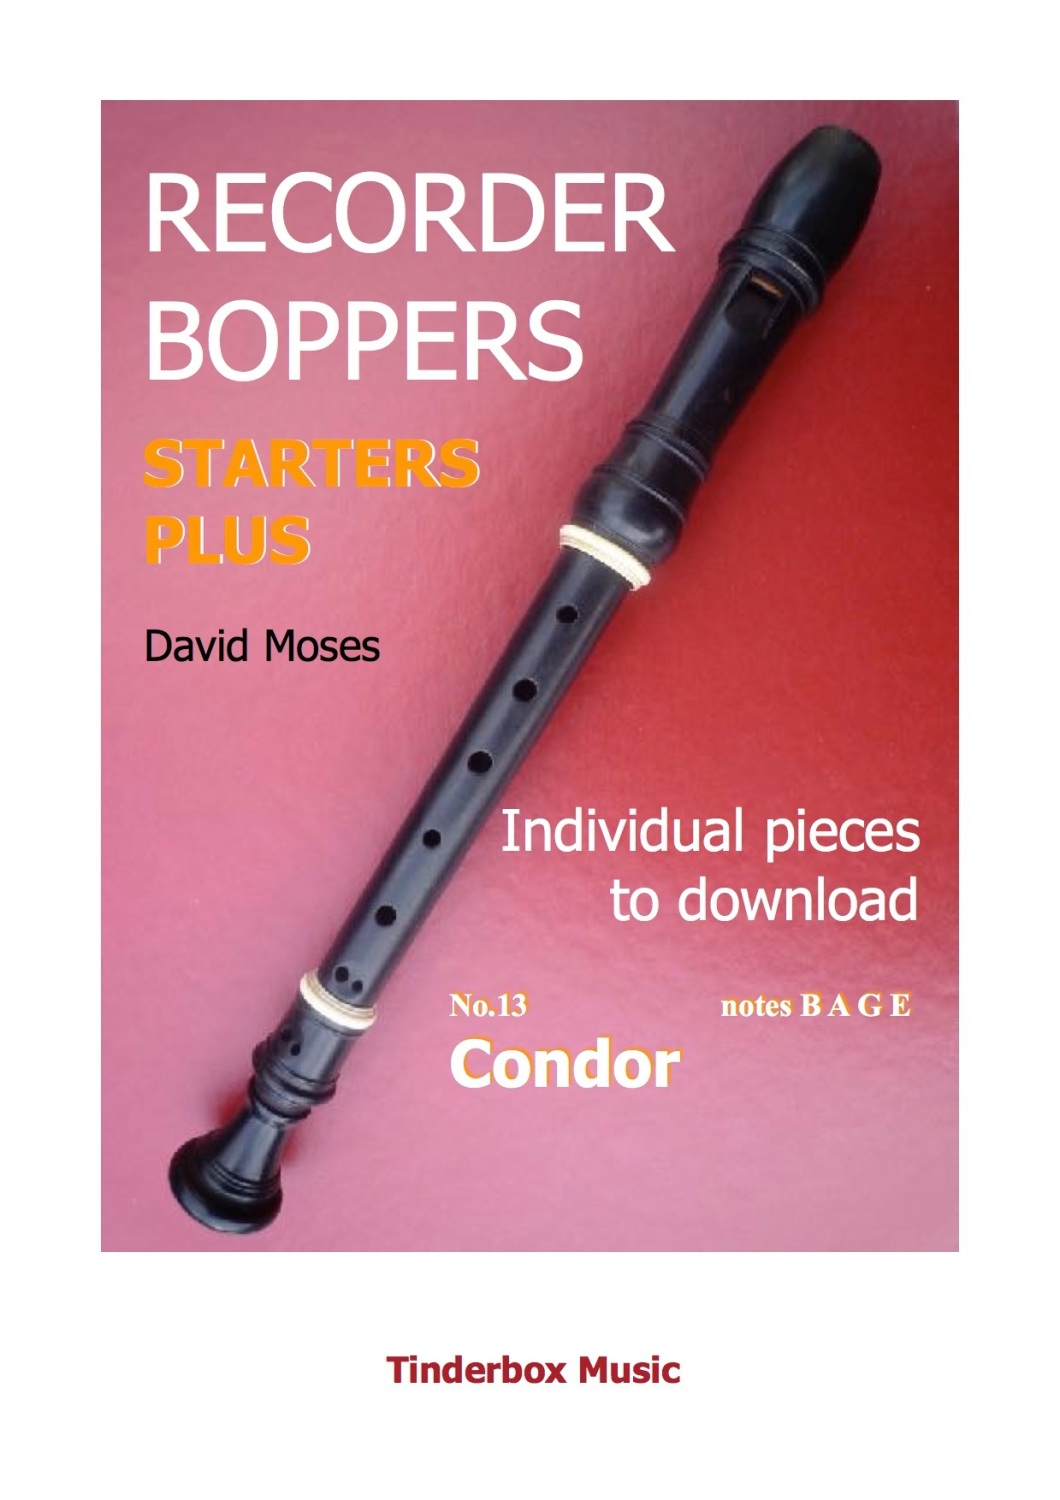 STARTERS PLUS individual pieces no.13 CONDOR  download